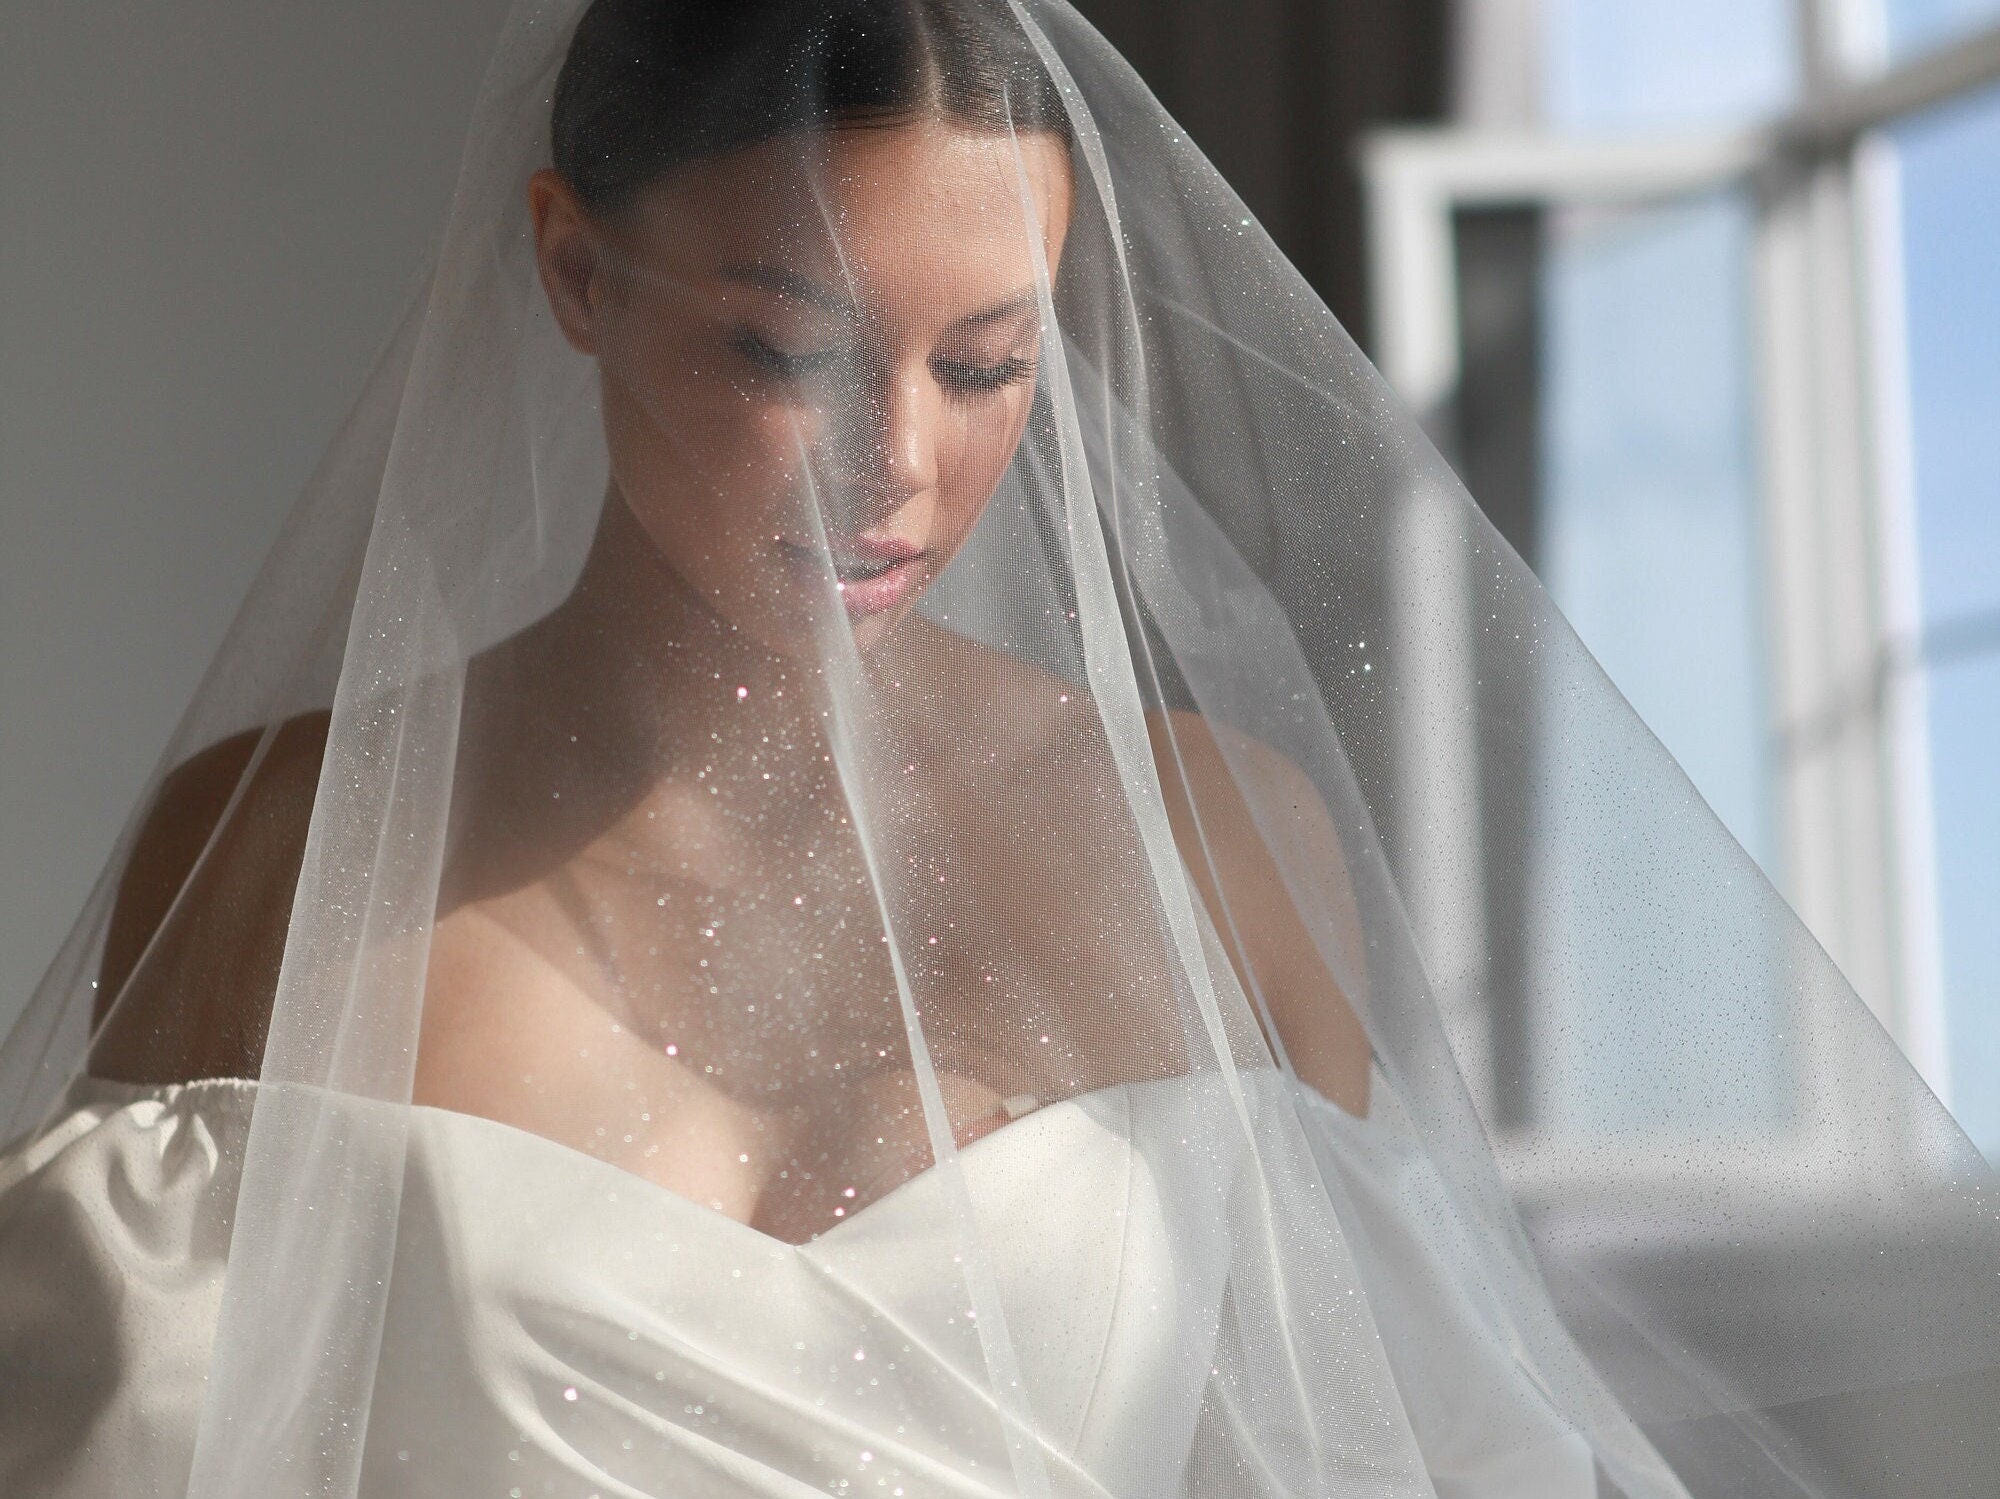 Ansonia Bridal Veil Style 352 Shimmer Glitter Tulle Veil